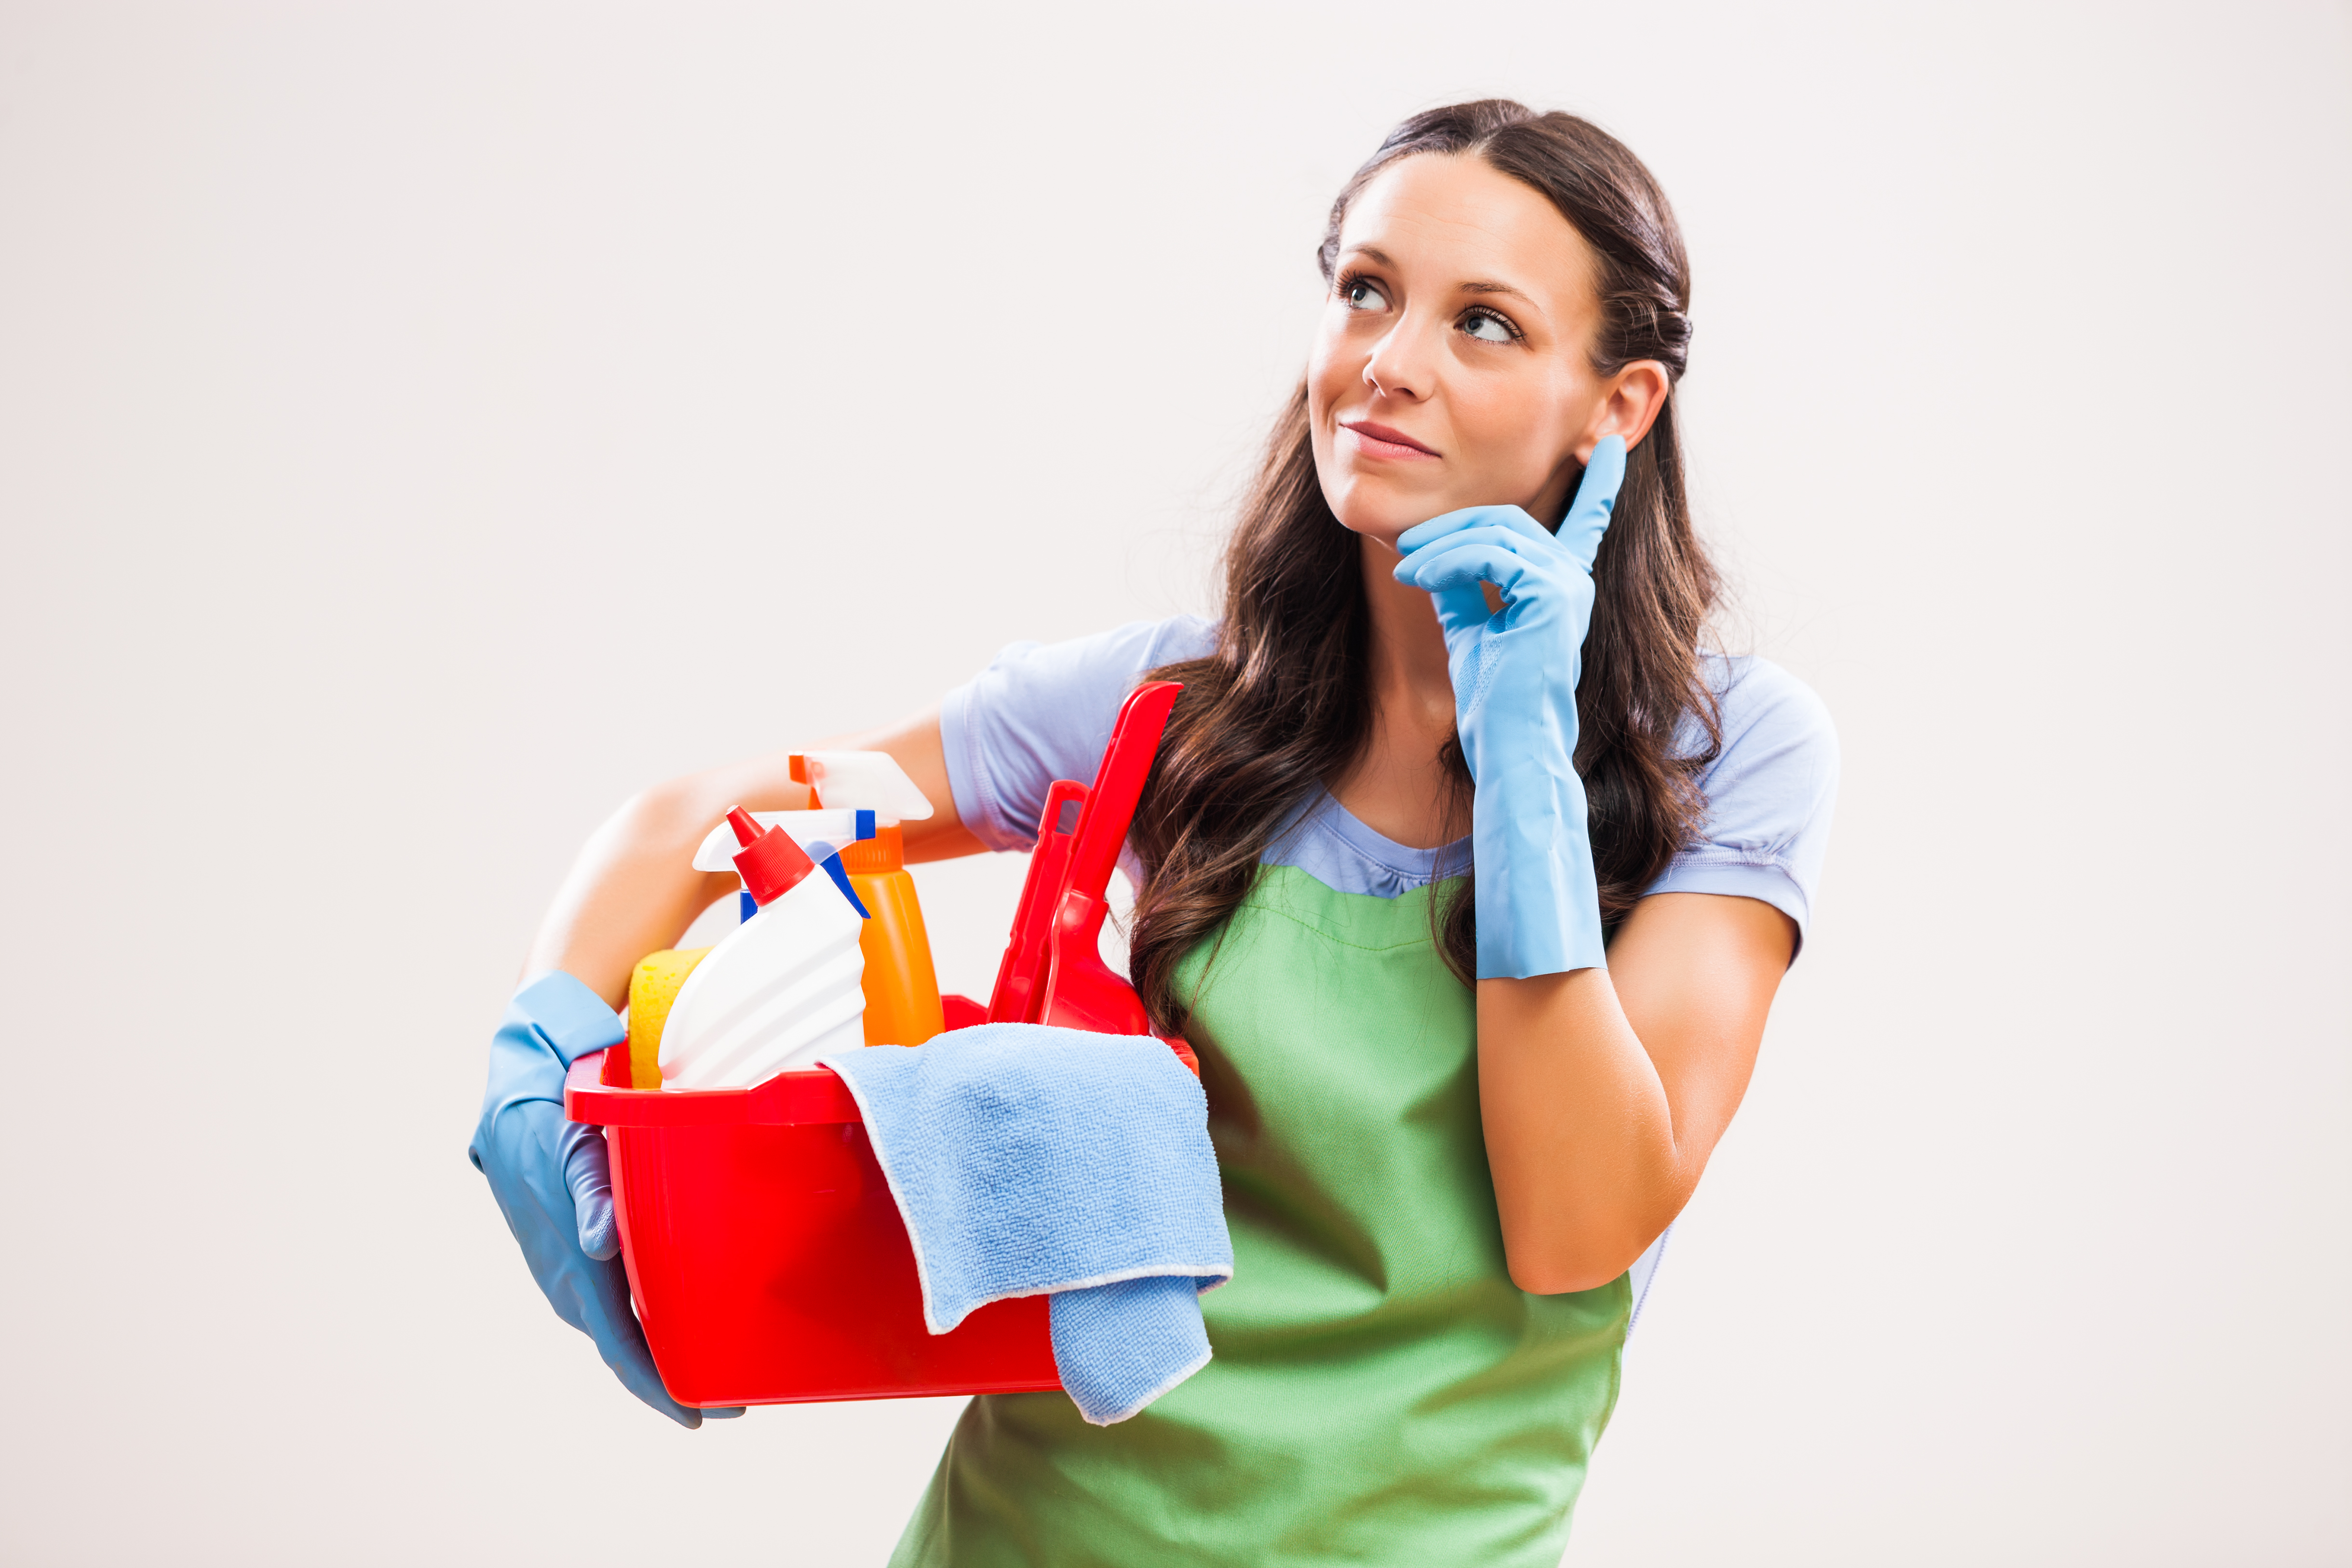 TRT-18 aplica Lei dos Empregados Domésticos para manter jornada integral de trabalhadora